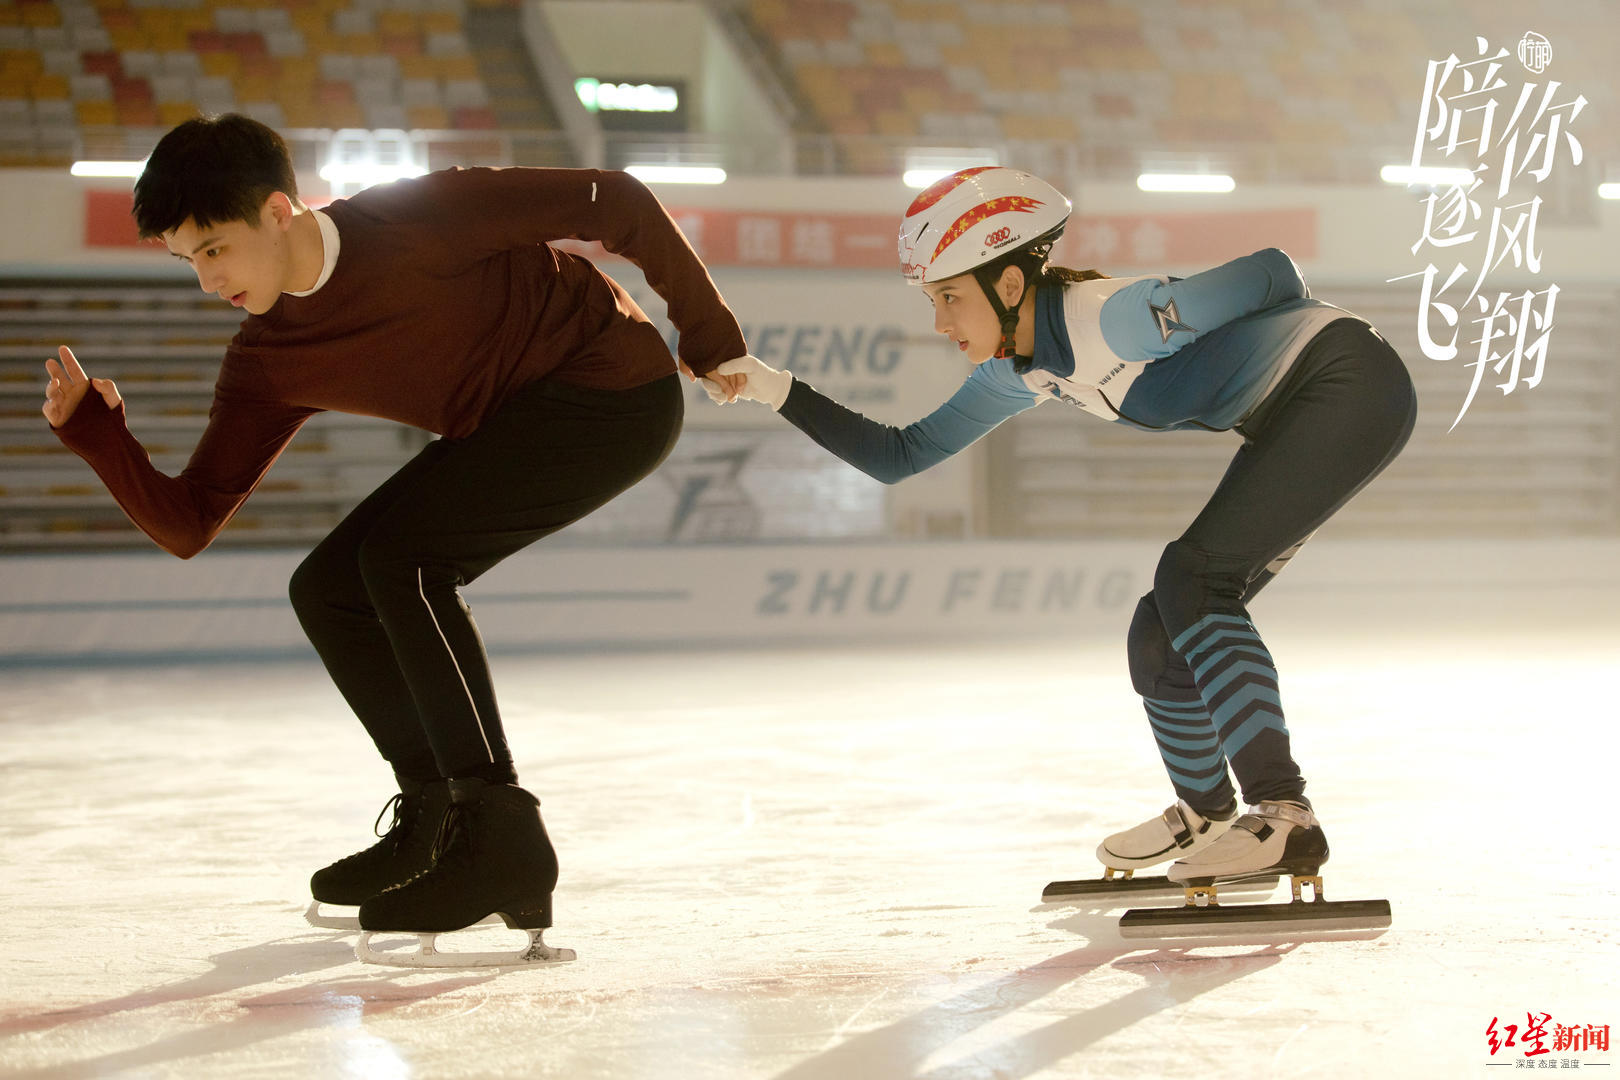 热冰和冰戏和冬季奥运会观察奥运会，“超越”“冰球少年”“冰雪名”